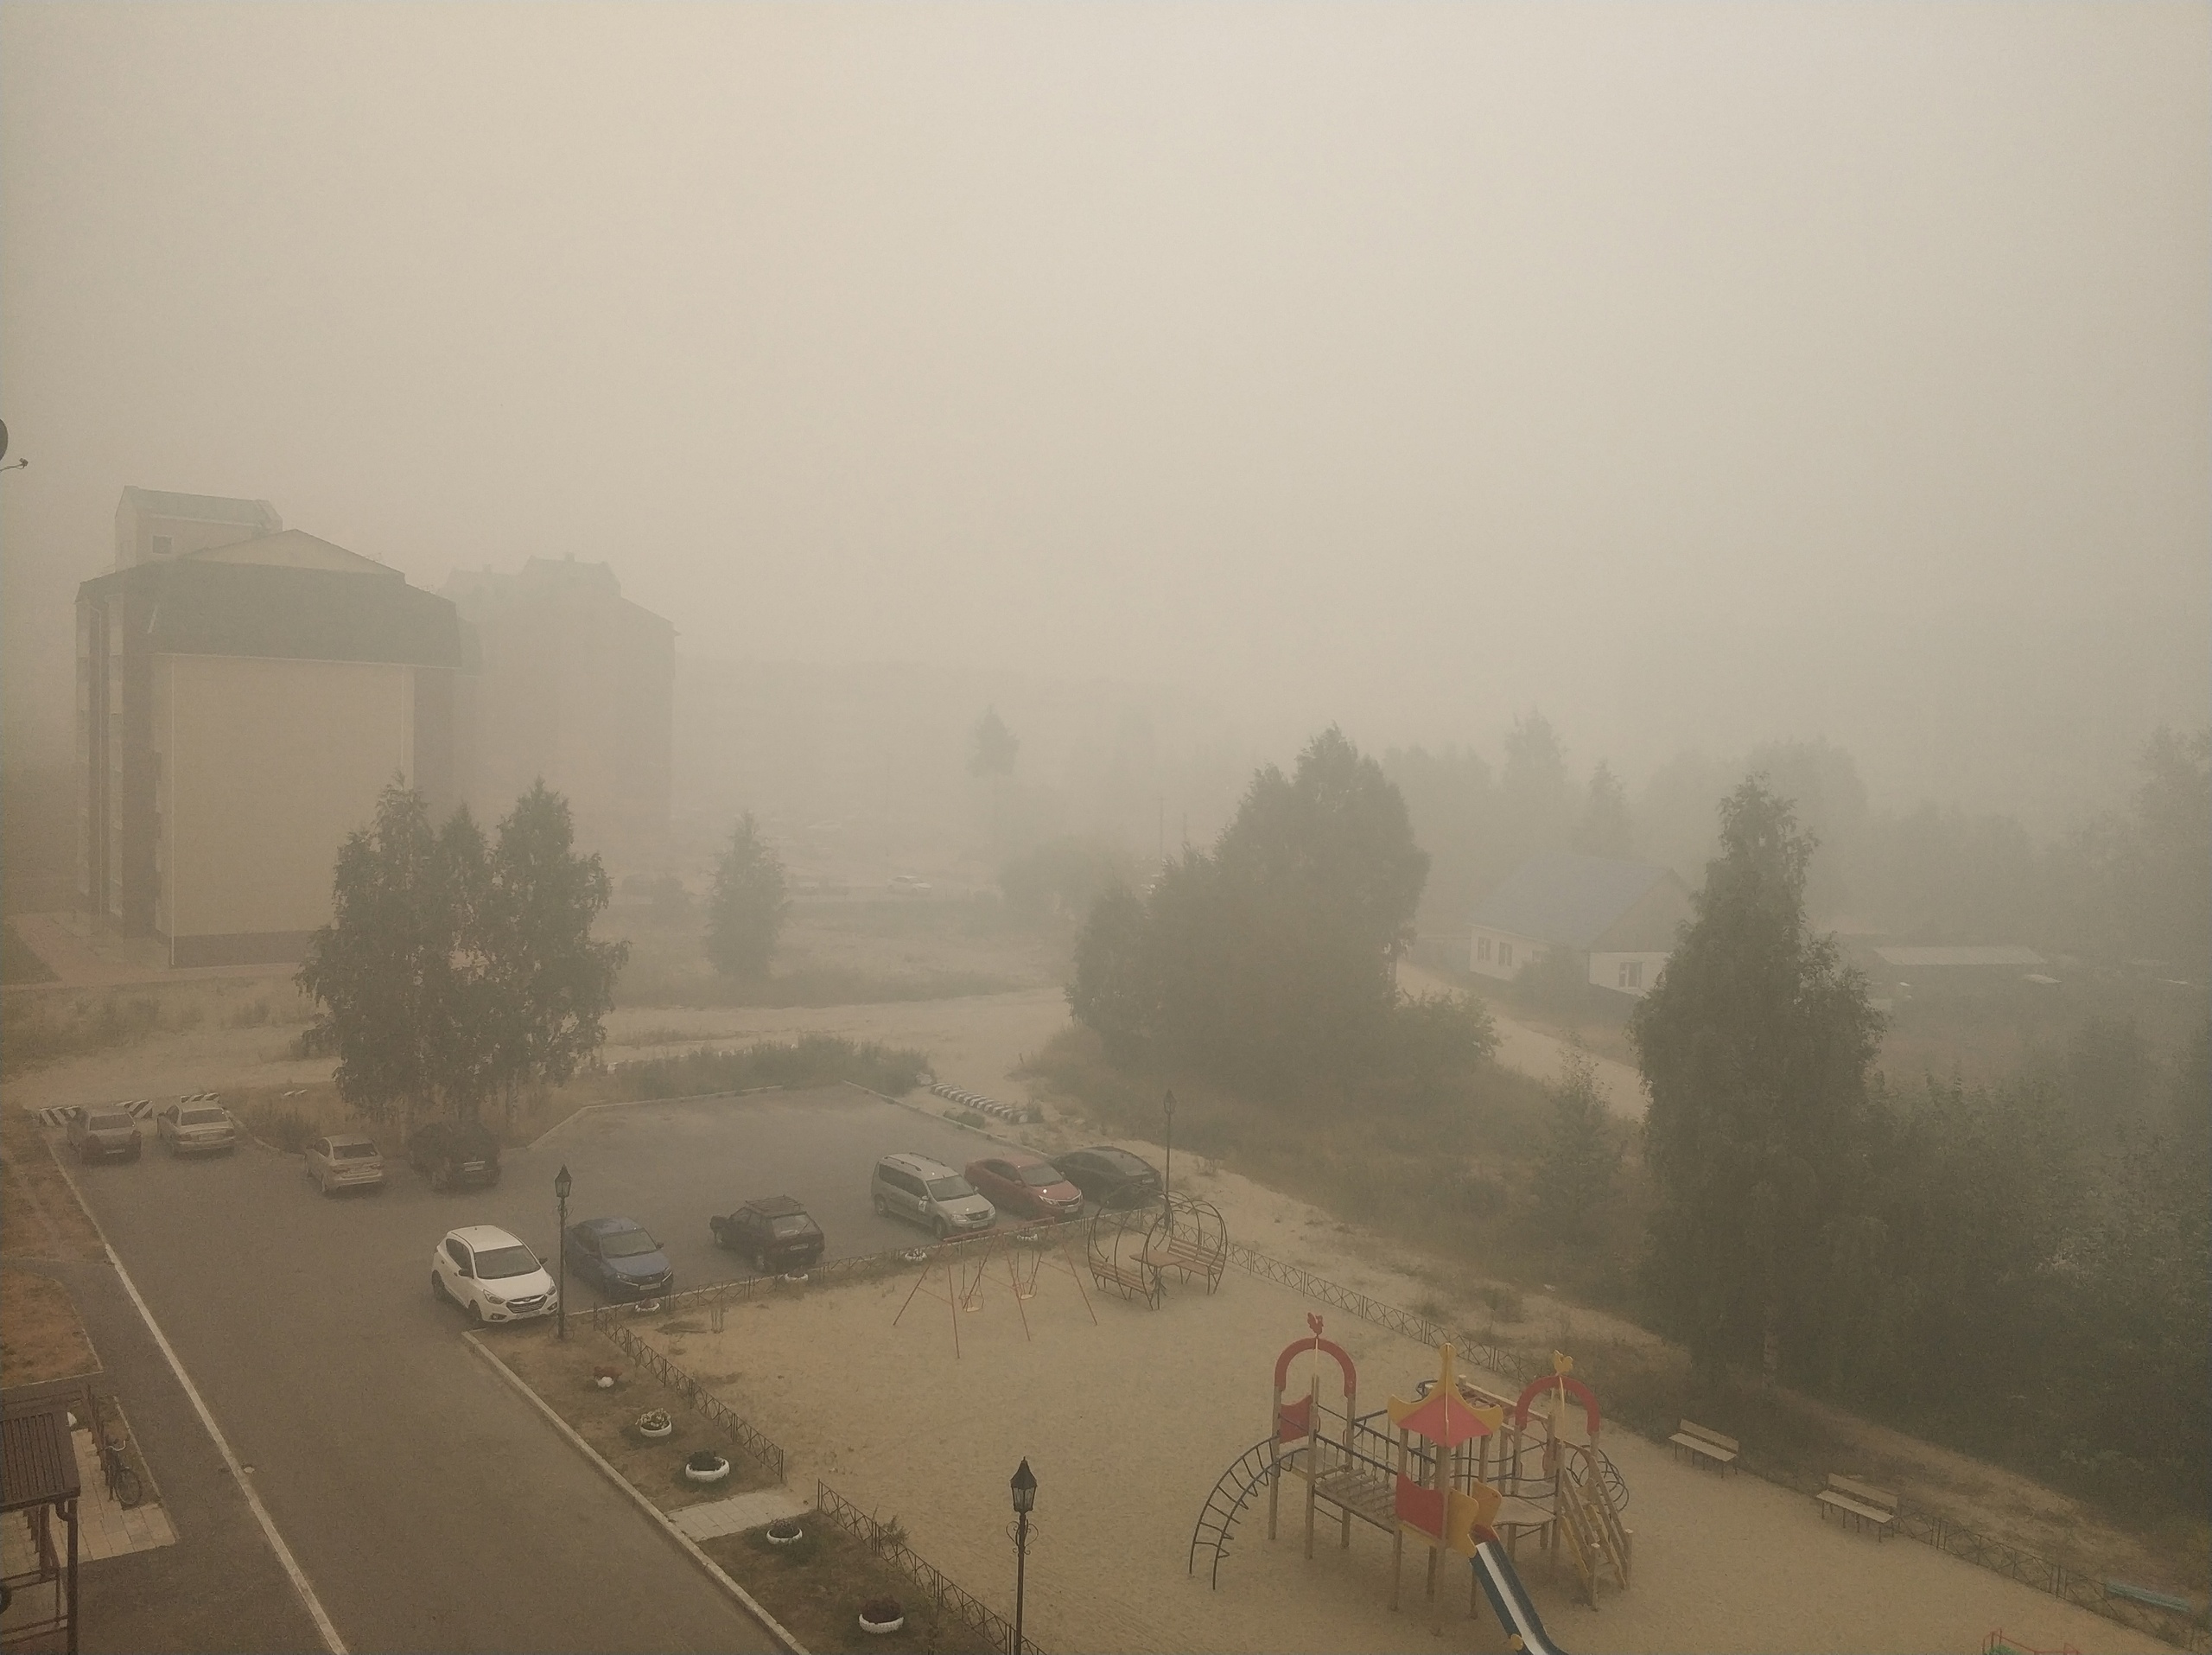 Югорск снова весь в дыму из-за лесных пожаров. Жители жалуются, что им нечем дышать, а Роспотребнадзор заявляет, что воздух чистый